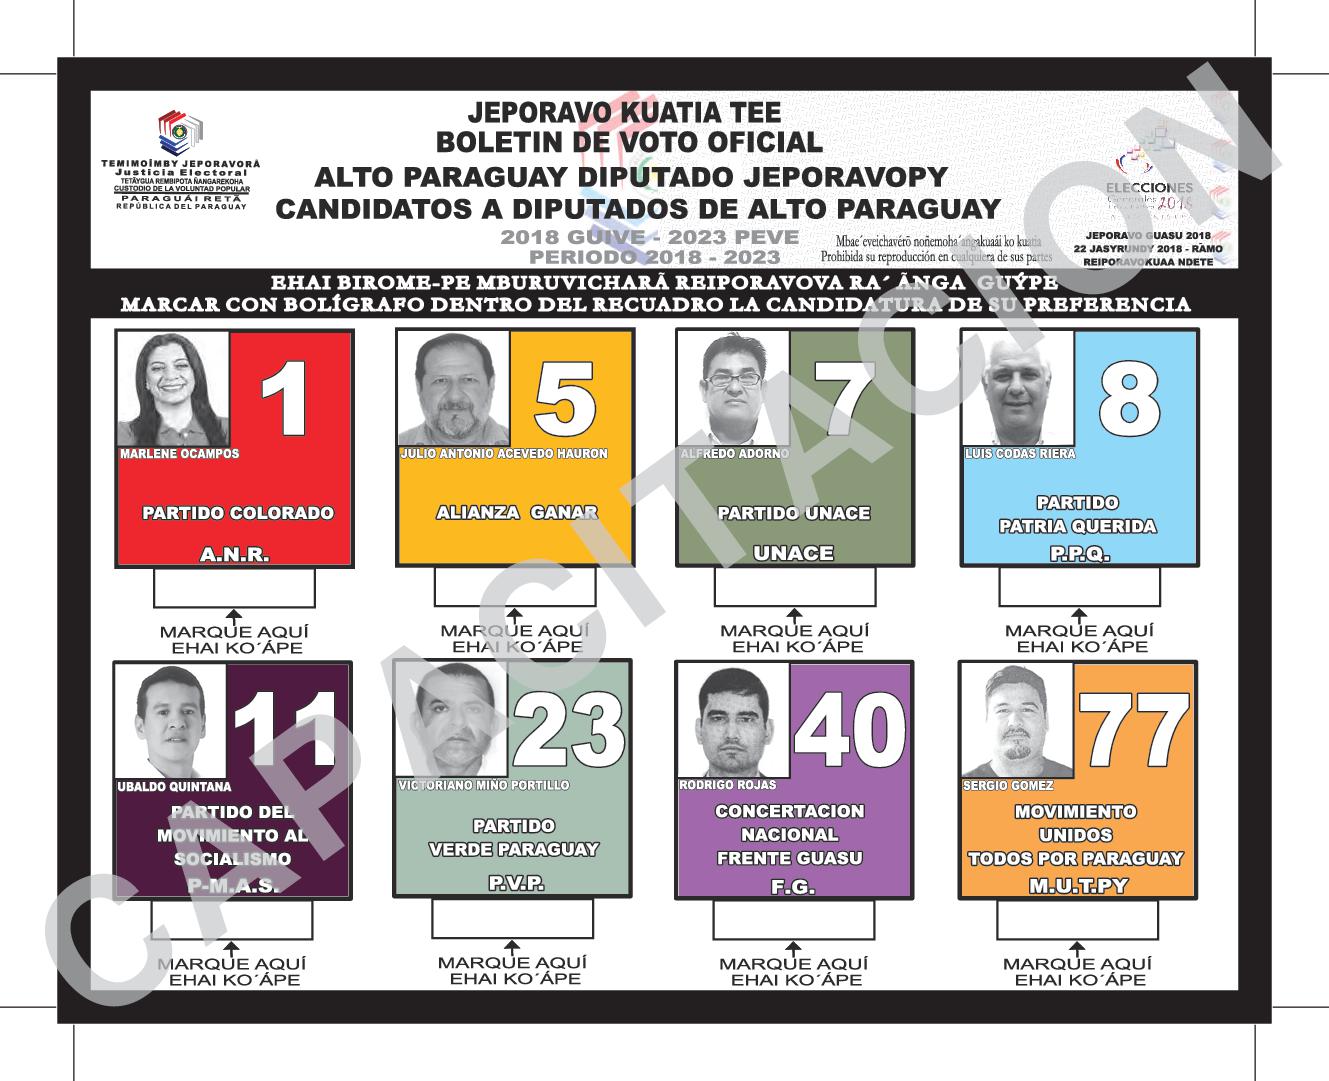 Boletin de voto de candidatos a Diputados de ALTO PARAGUAY